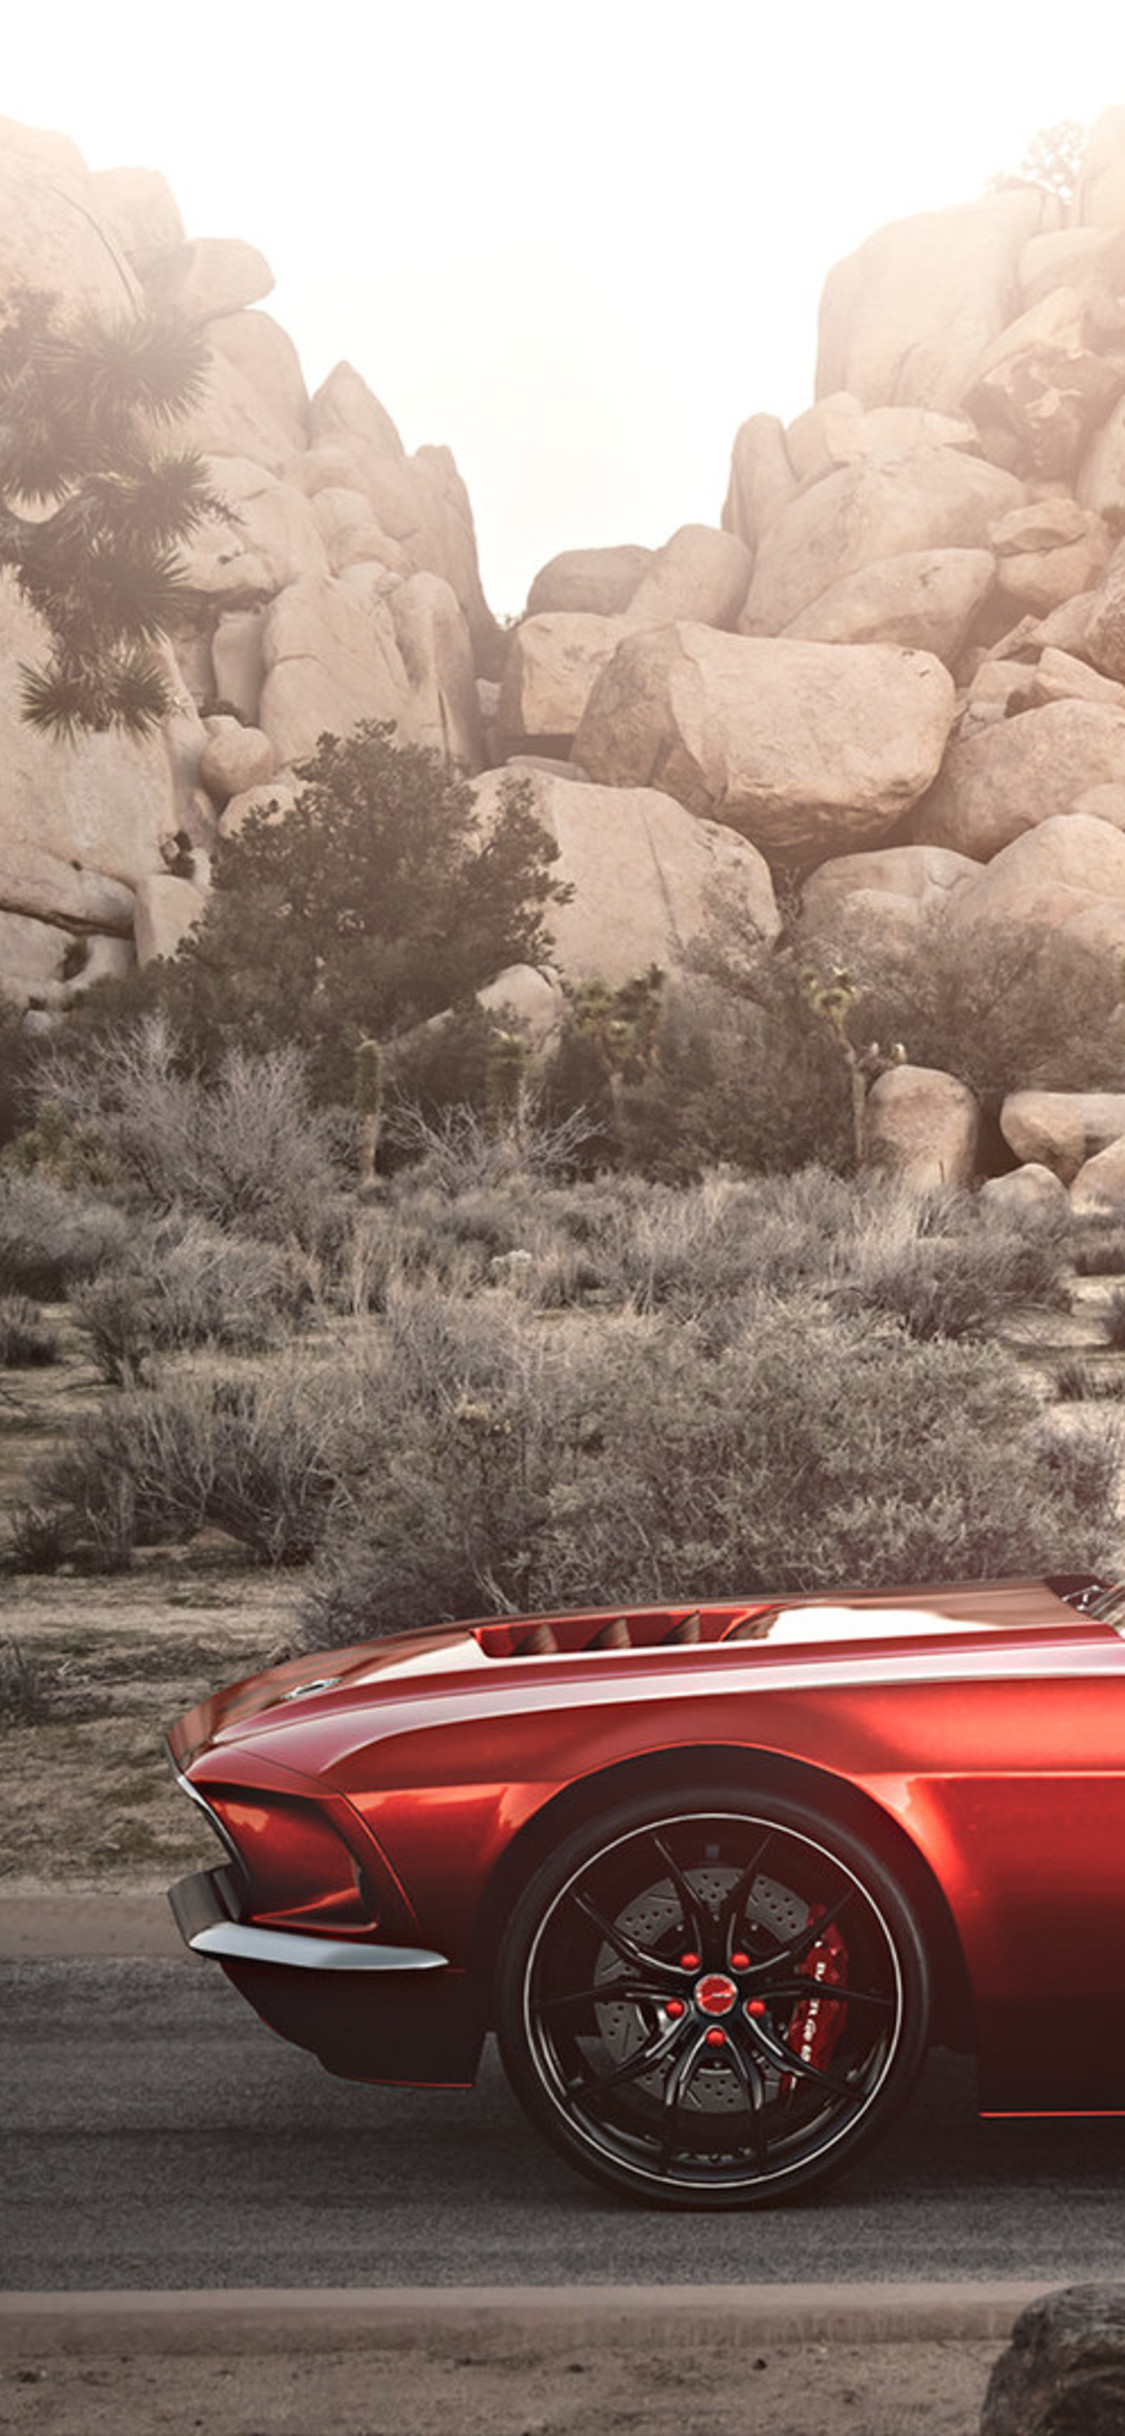 Ford Mustang Pontiac Firebird - Pontiac Firebird Wallpaper Iphone , HD Wallpaper & Backgrounds